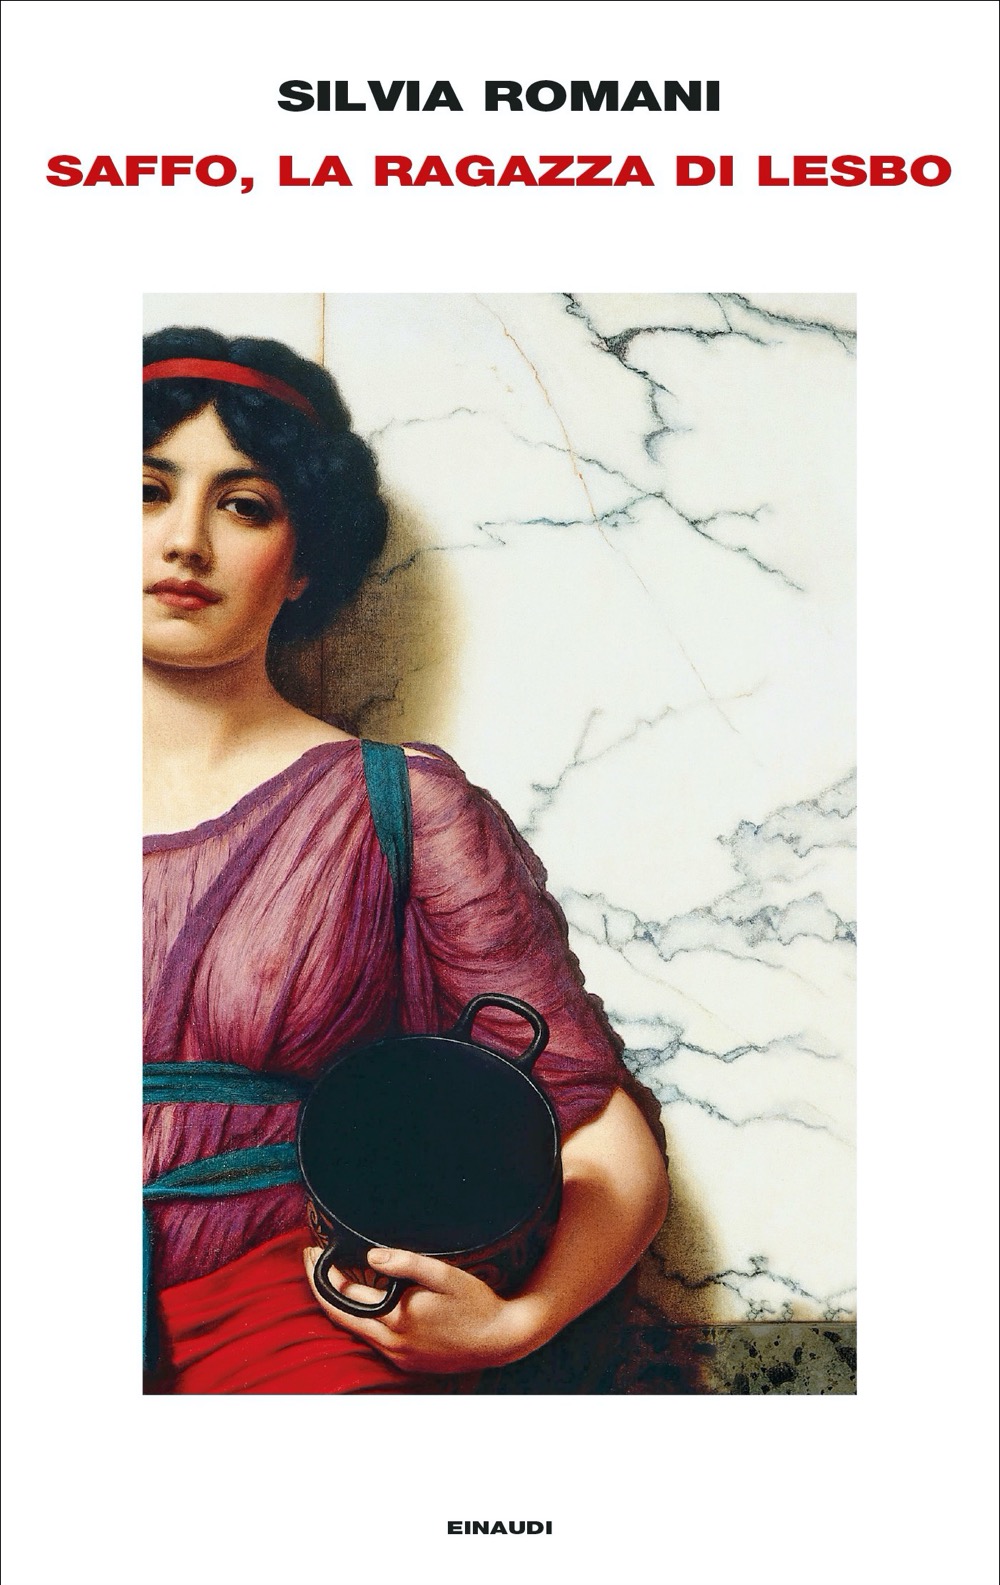 La copertina del libro Saffo, la ragazza di Lesbo, di Silvia Romani, pubblicato da Einaudi (2022) nella collana Frontiere